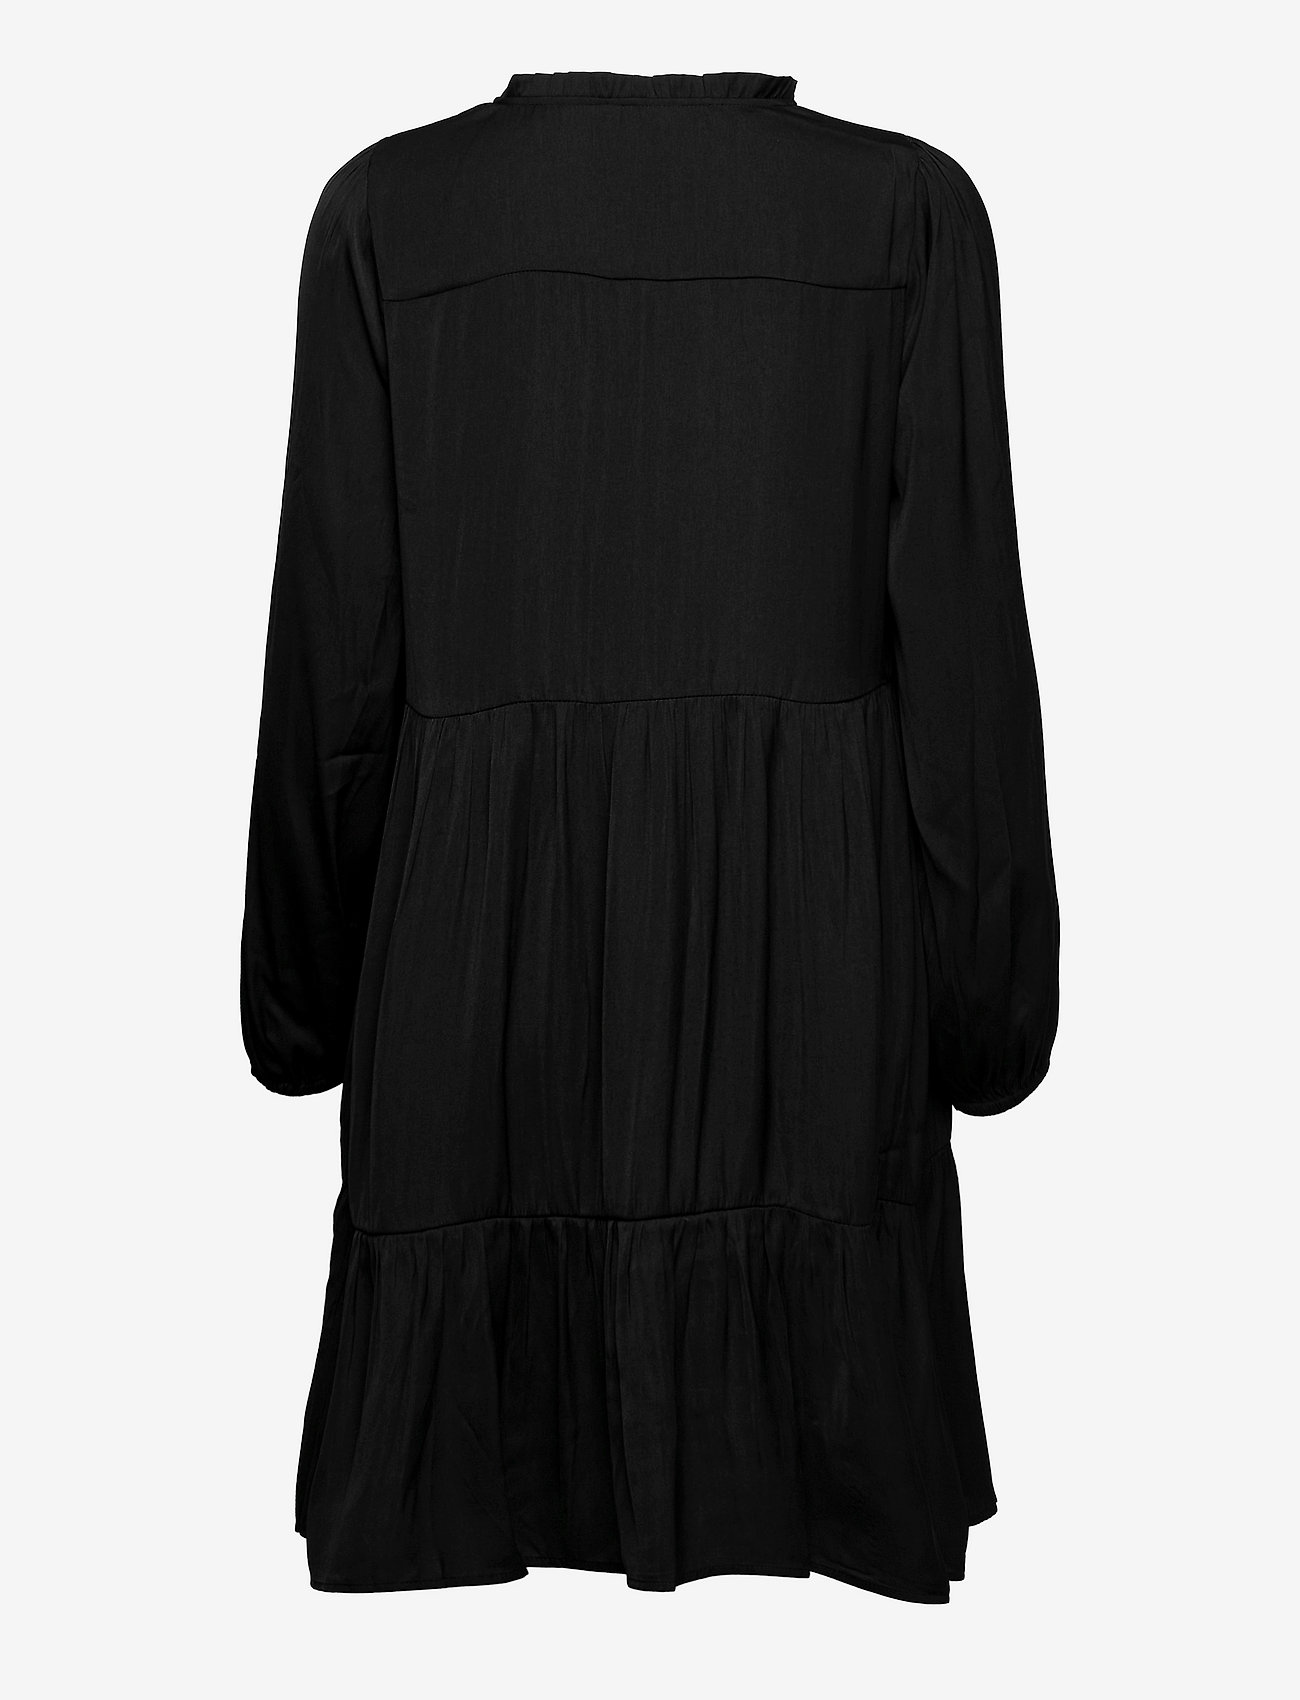 Soyaconcept - SC-PAMELA - korte jurken - black - 1